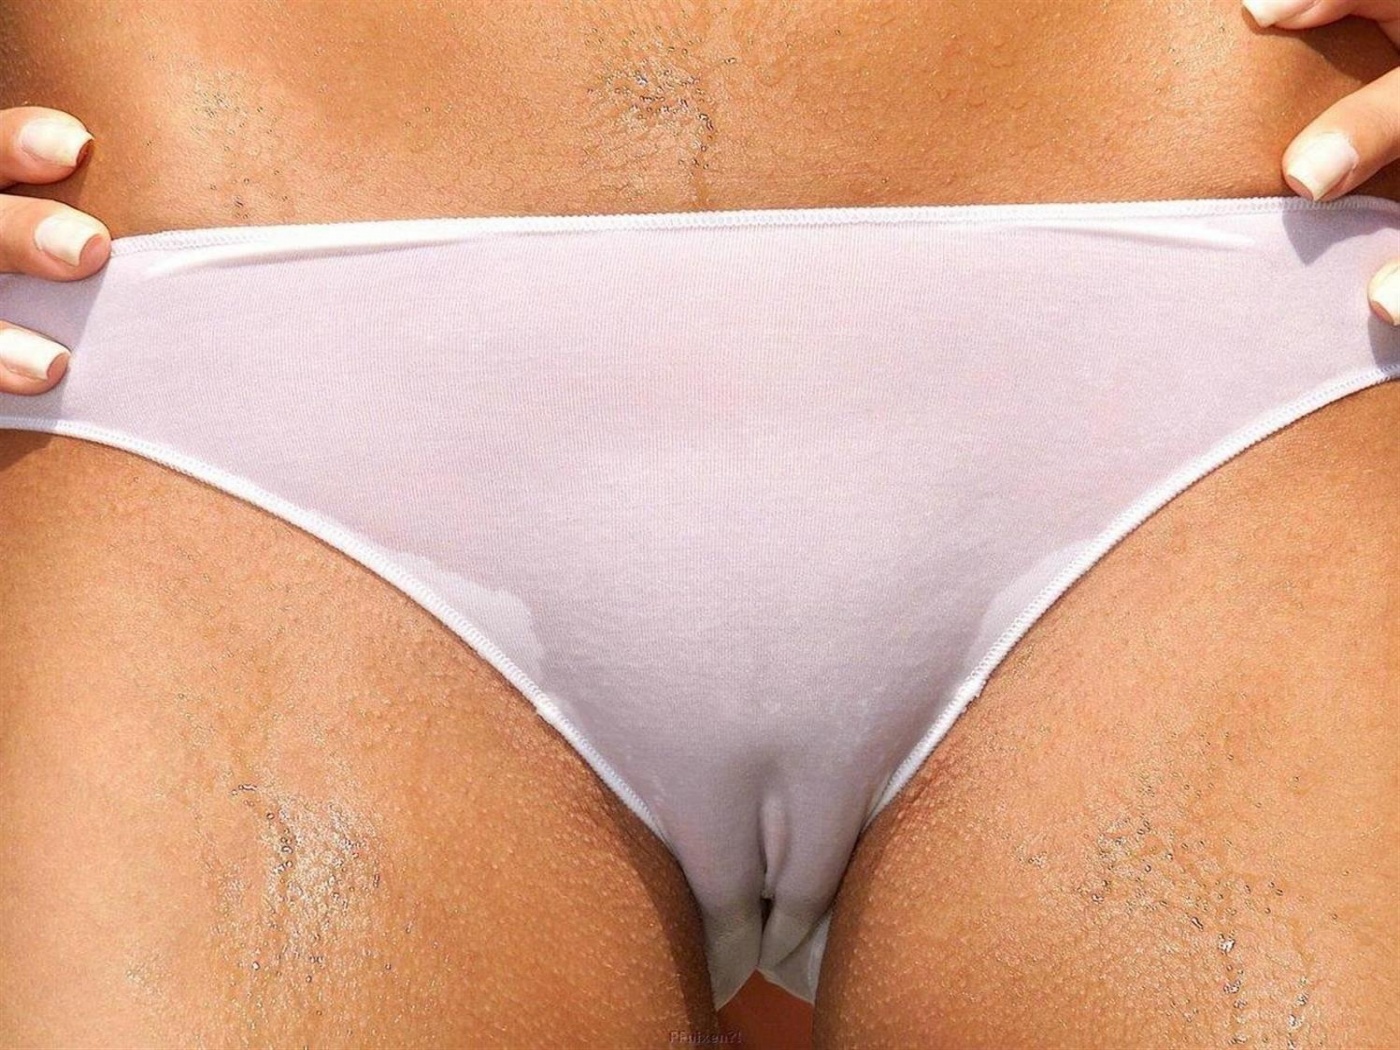 see through bra and panties cameltoe - dianduran.com.